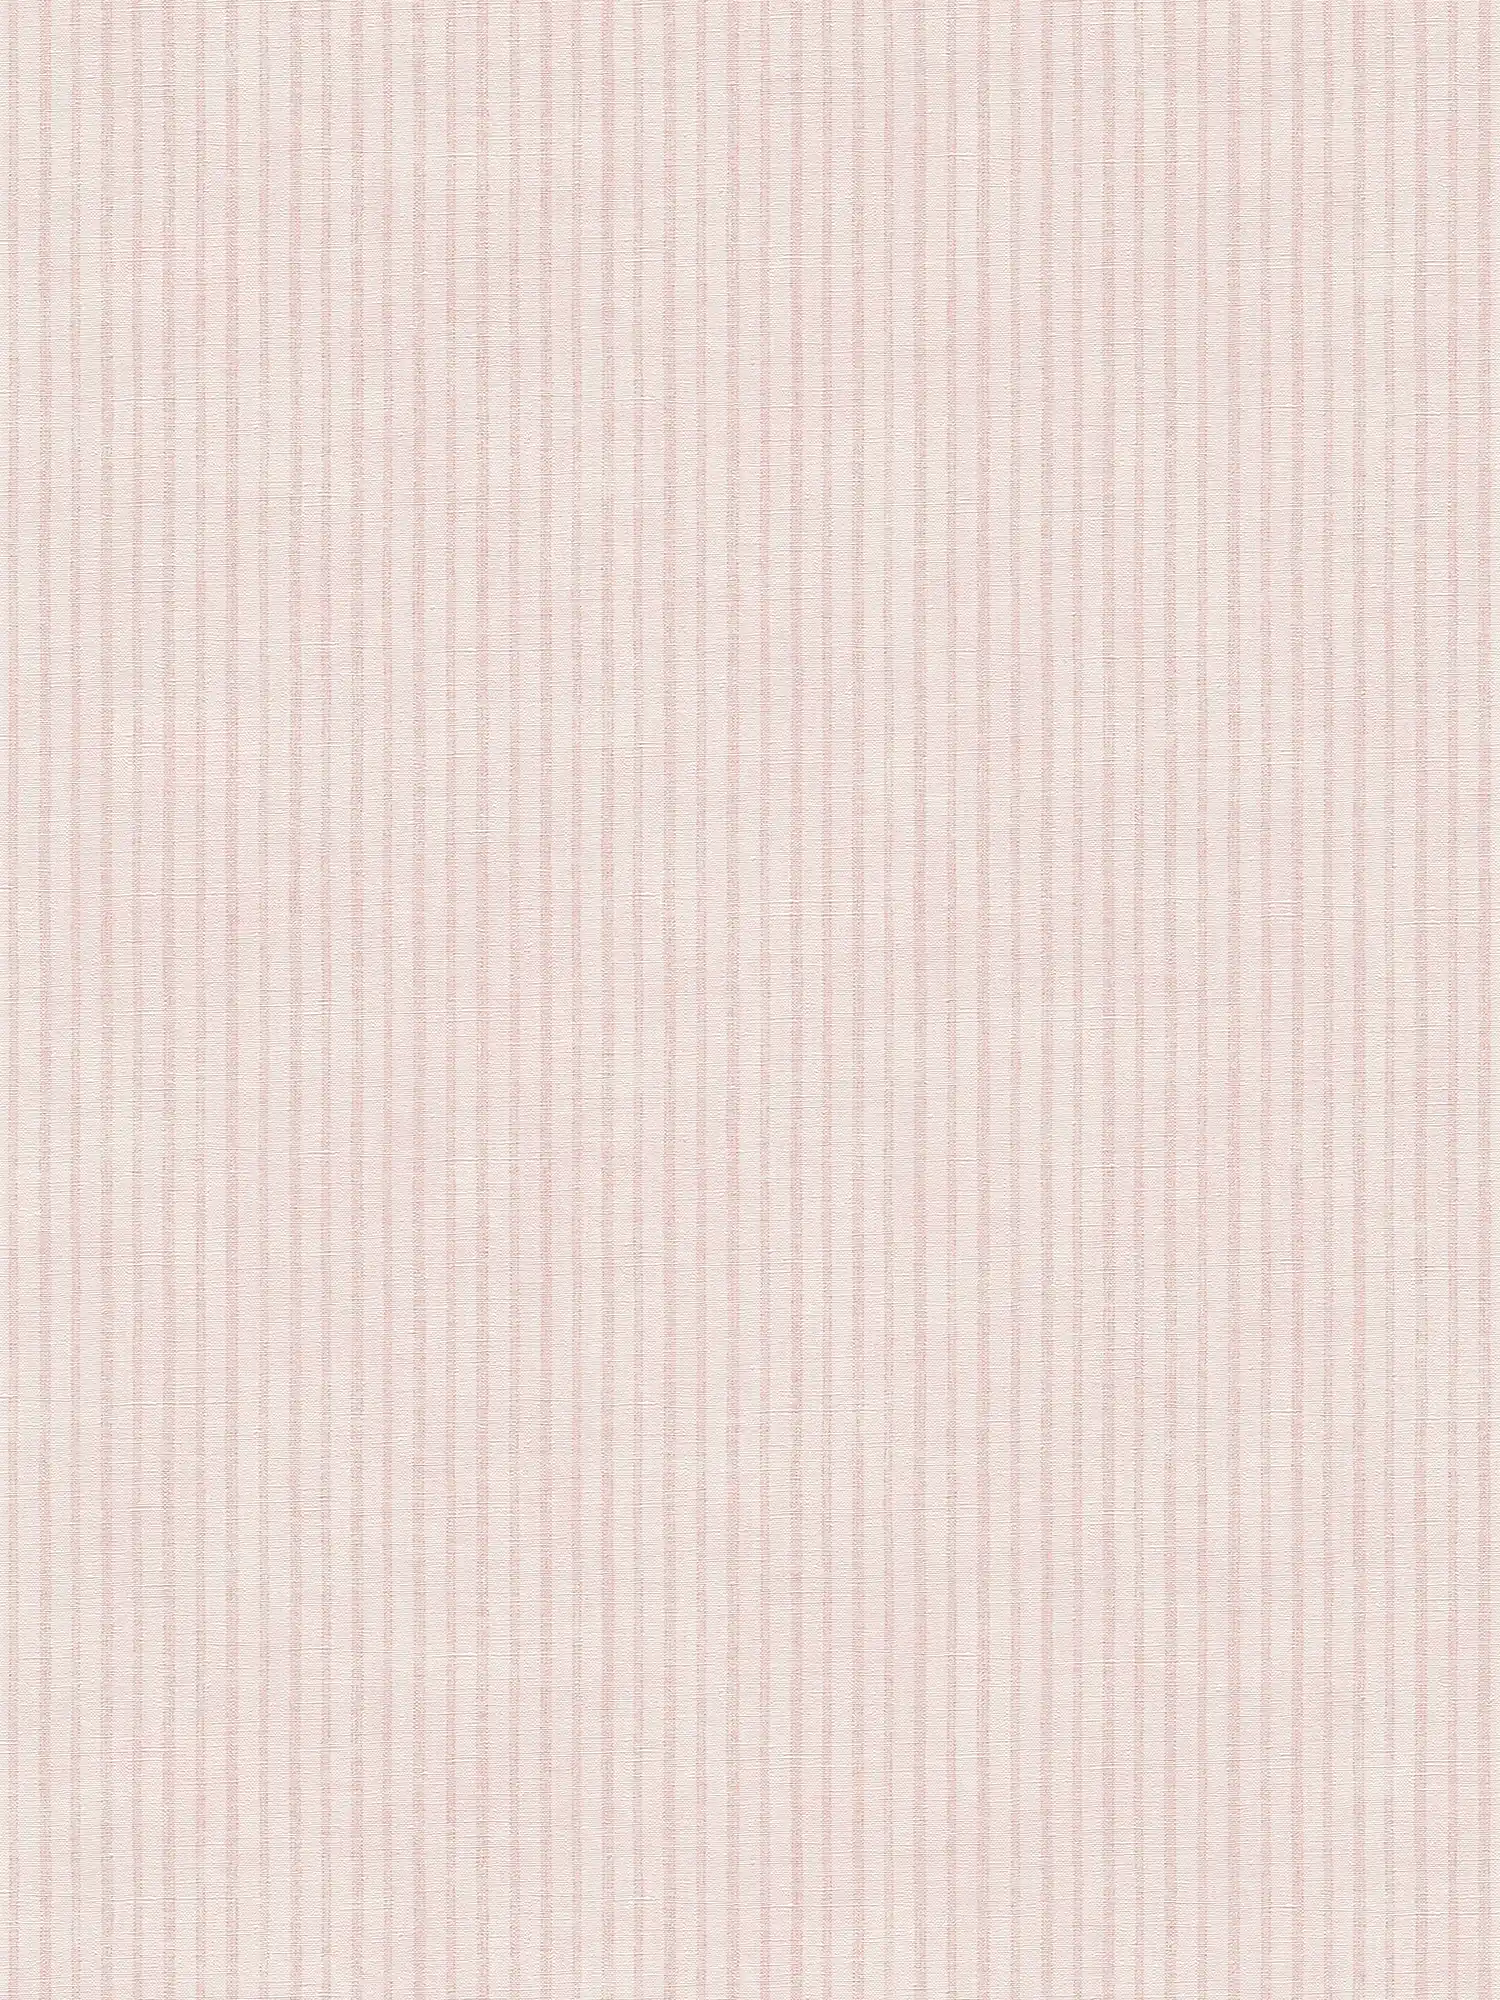 Papier peint à rayures, style maison de campagne - crème, rose
